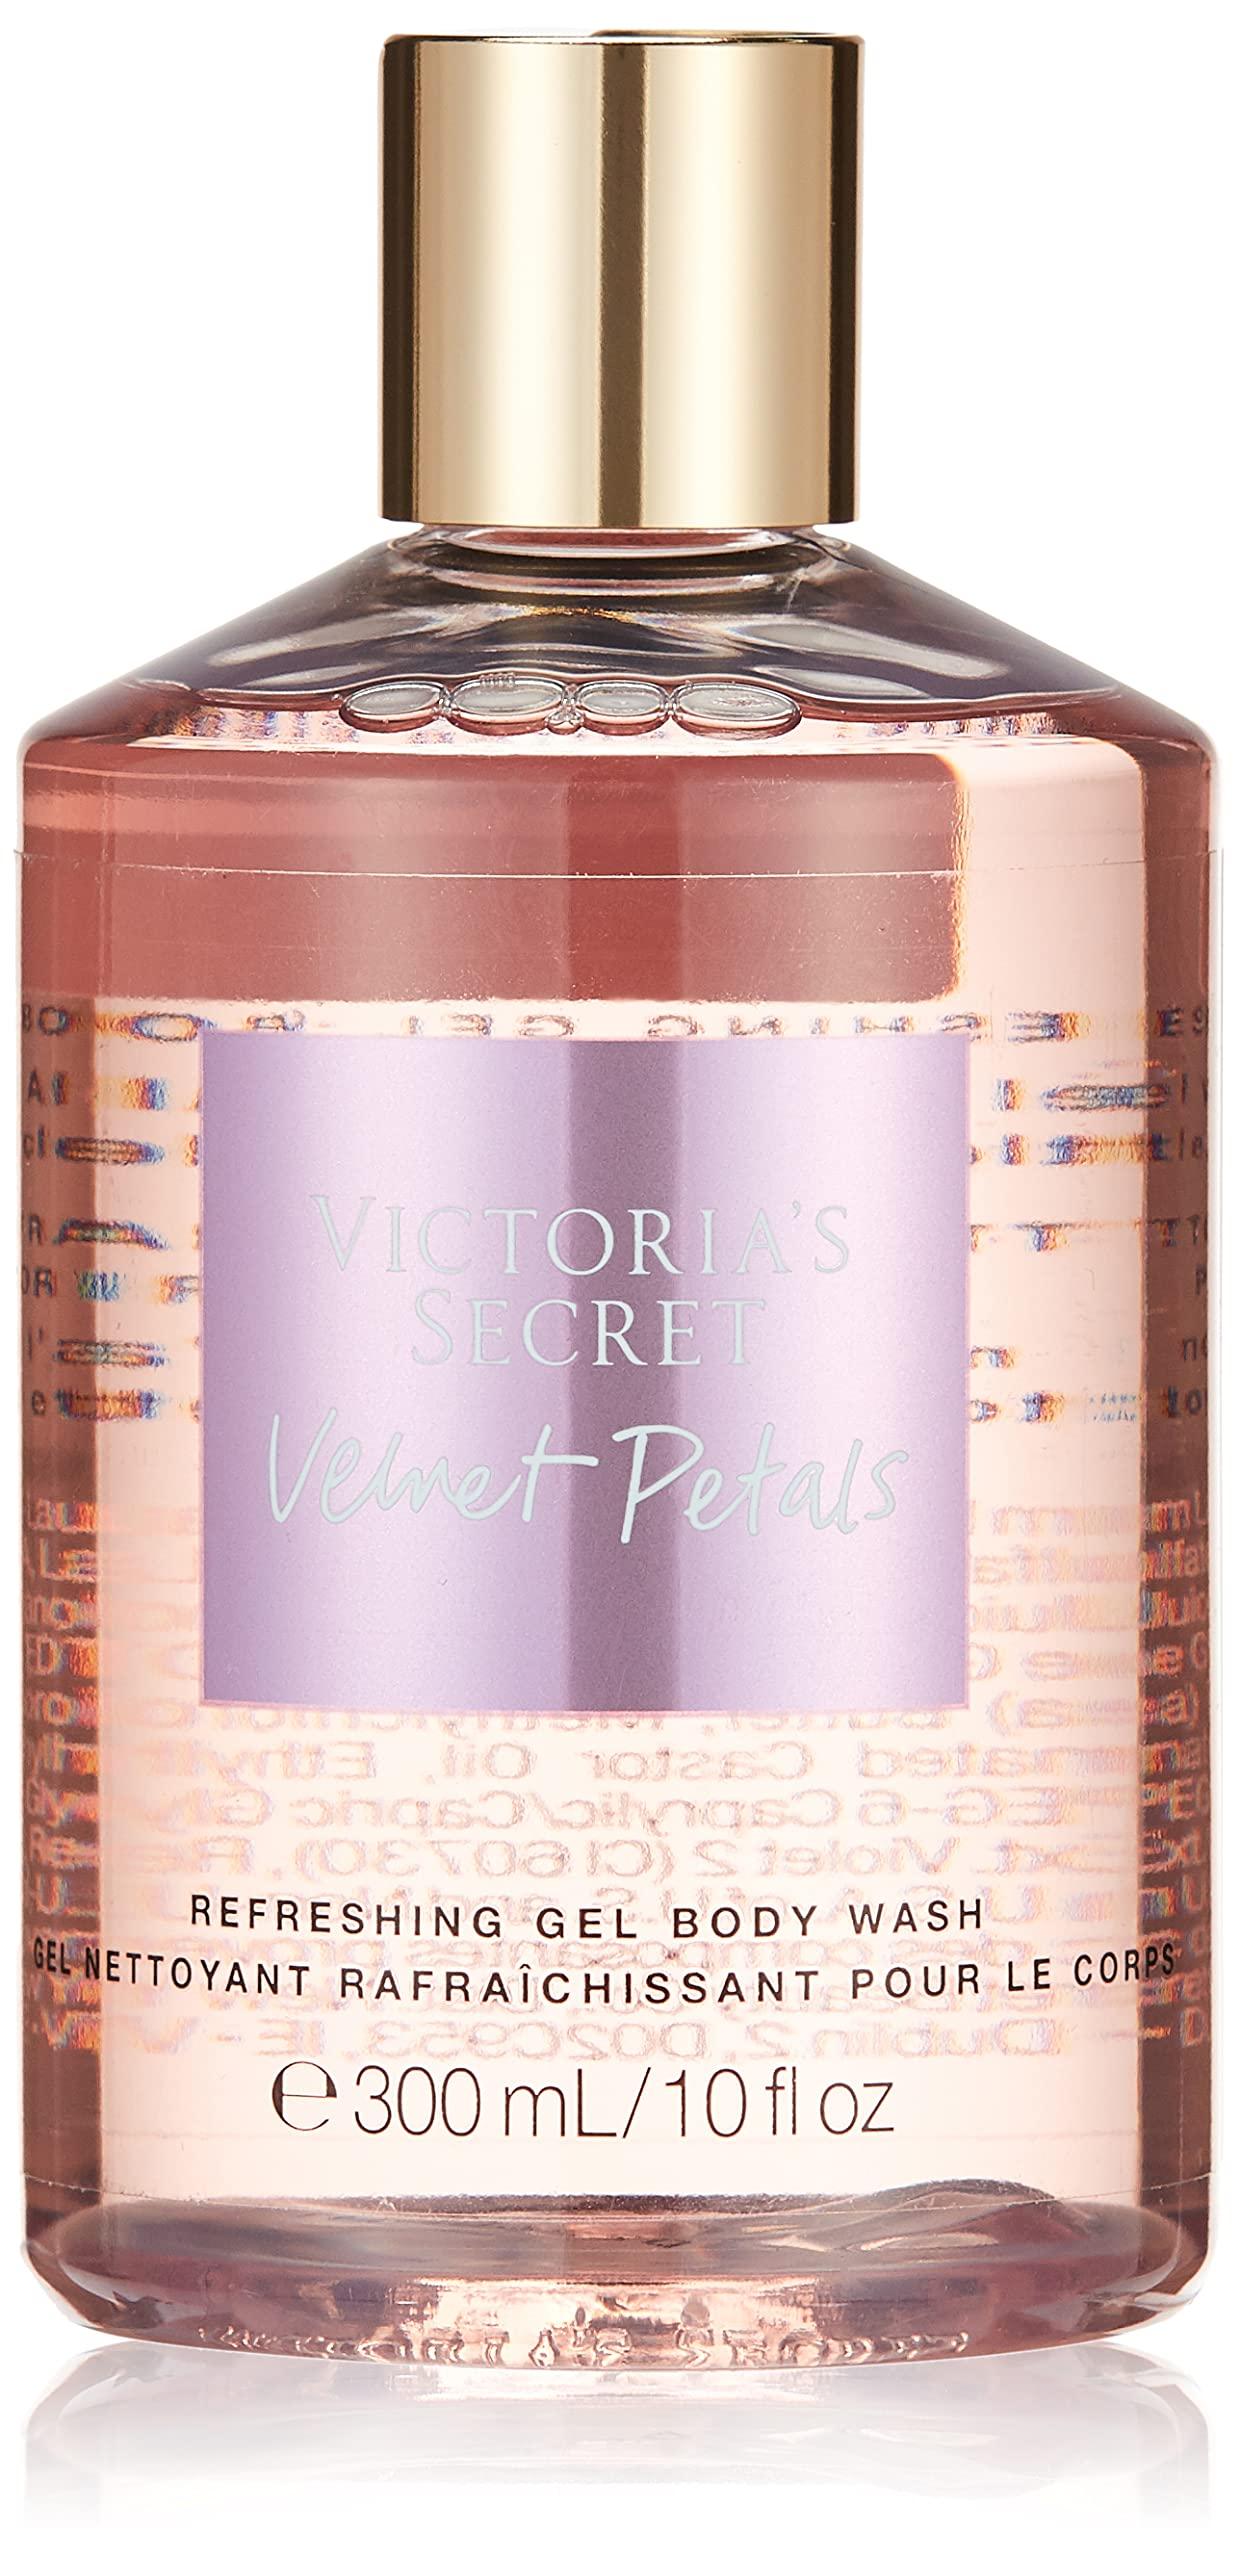 Victoria's Secret Velvet Petals 8 Oz Fragrance Lotion, Mists & Lotions 5  For $30